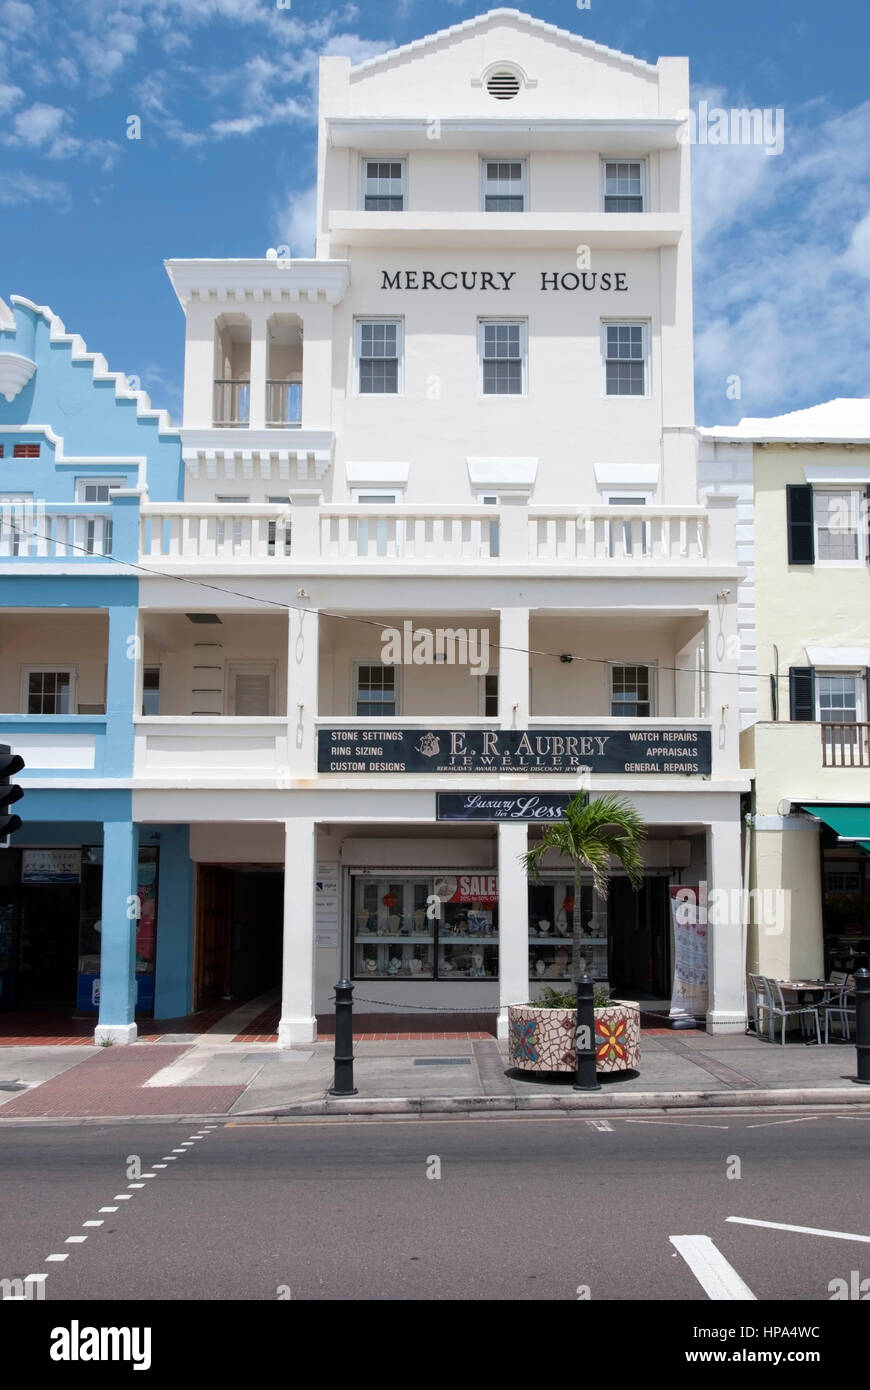 E.R. Aubrey Boutique Bijoutier chambre Mercure Front Street Hamilton Bermudes vue extérieure bermudien traditionnel de 5 étages blanc brillant shop office complex Banque D'Images